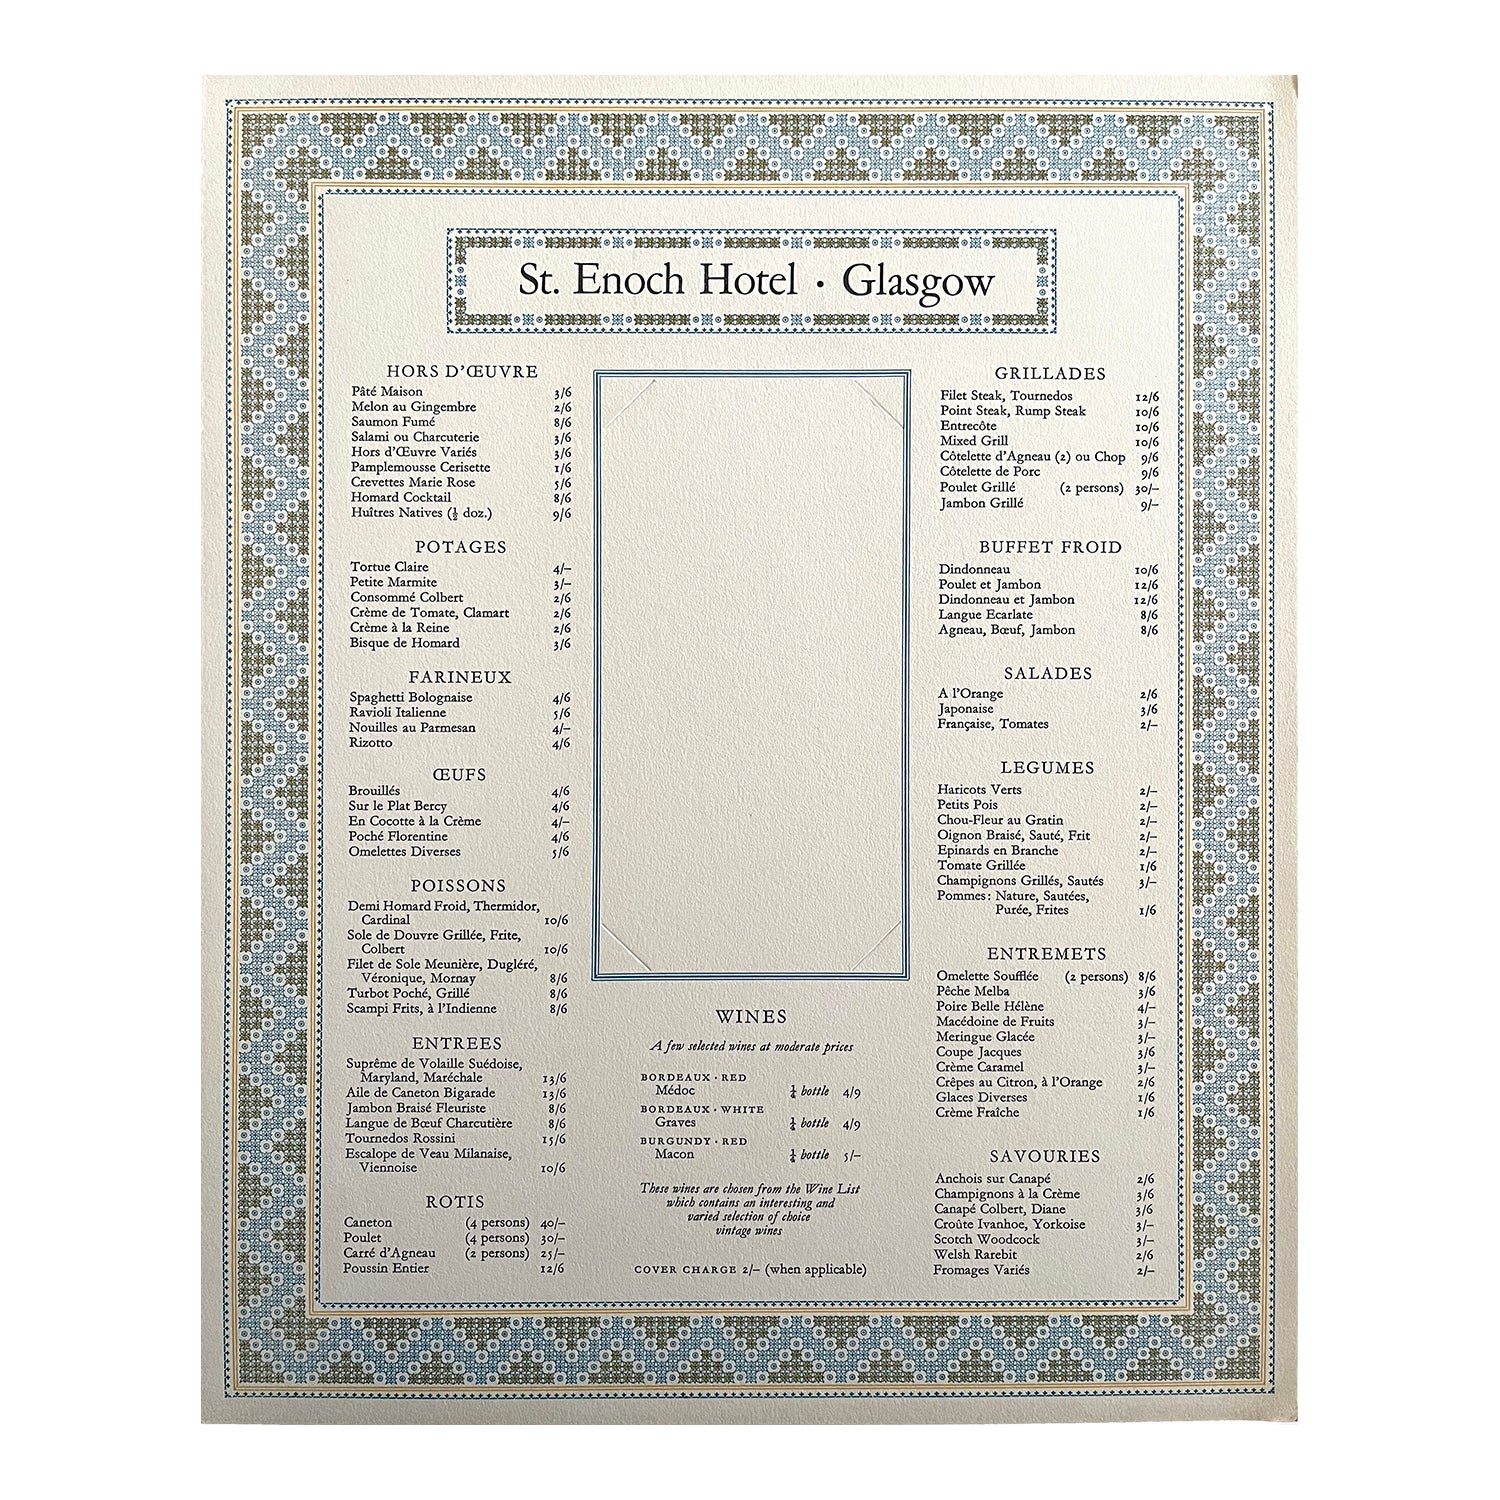 railway hotel menu, St Enoch Hotel, Glasgow, printed by the Curwen Press, c. 1960